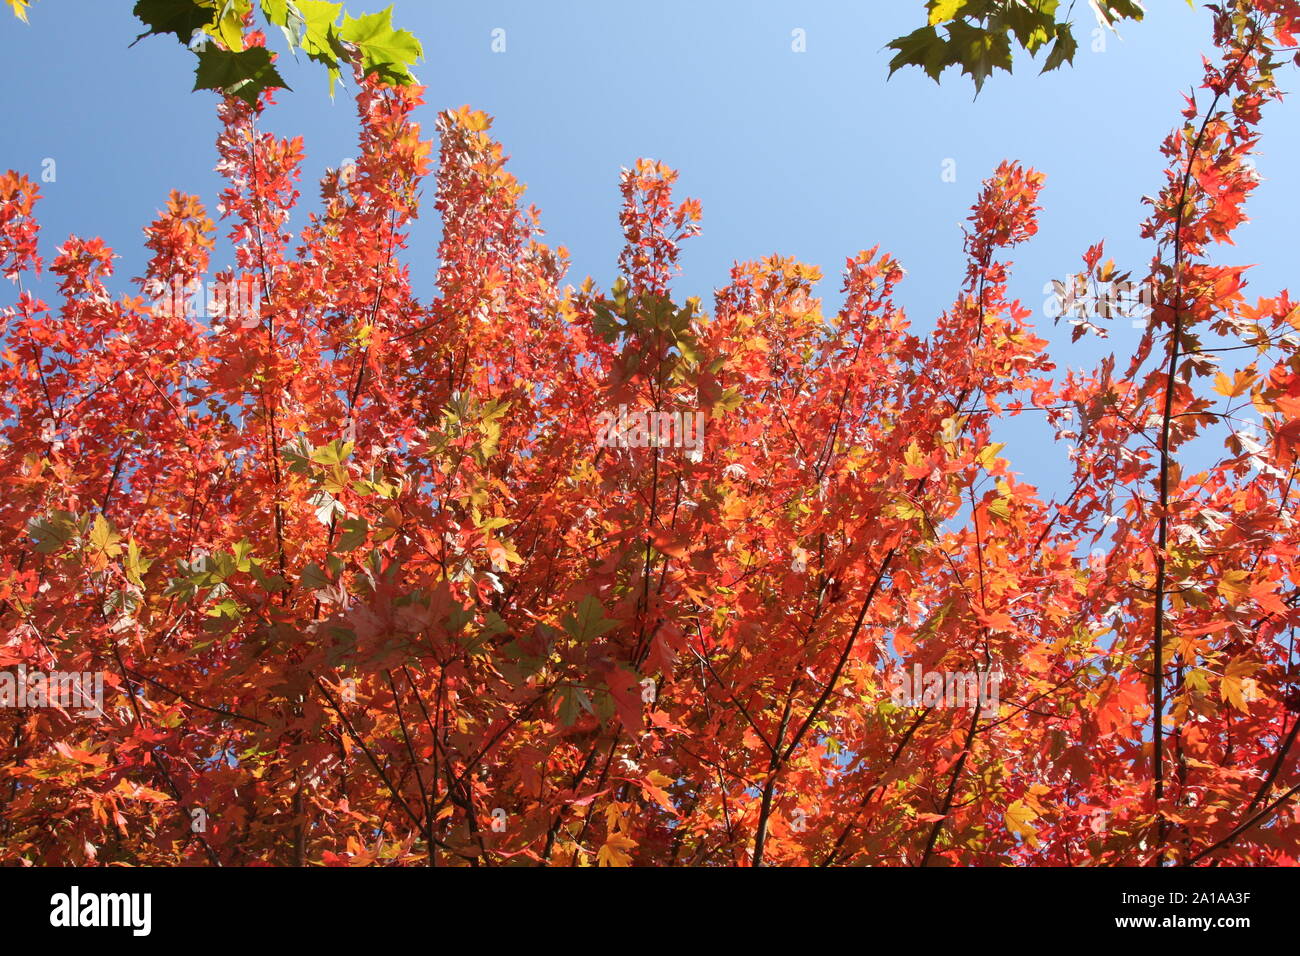 Un arbre avec des feuilles colorées contre un ciel bleu à l'automne Banque D'Images